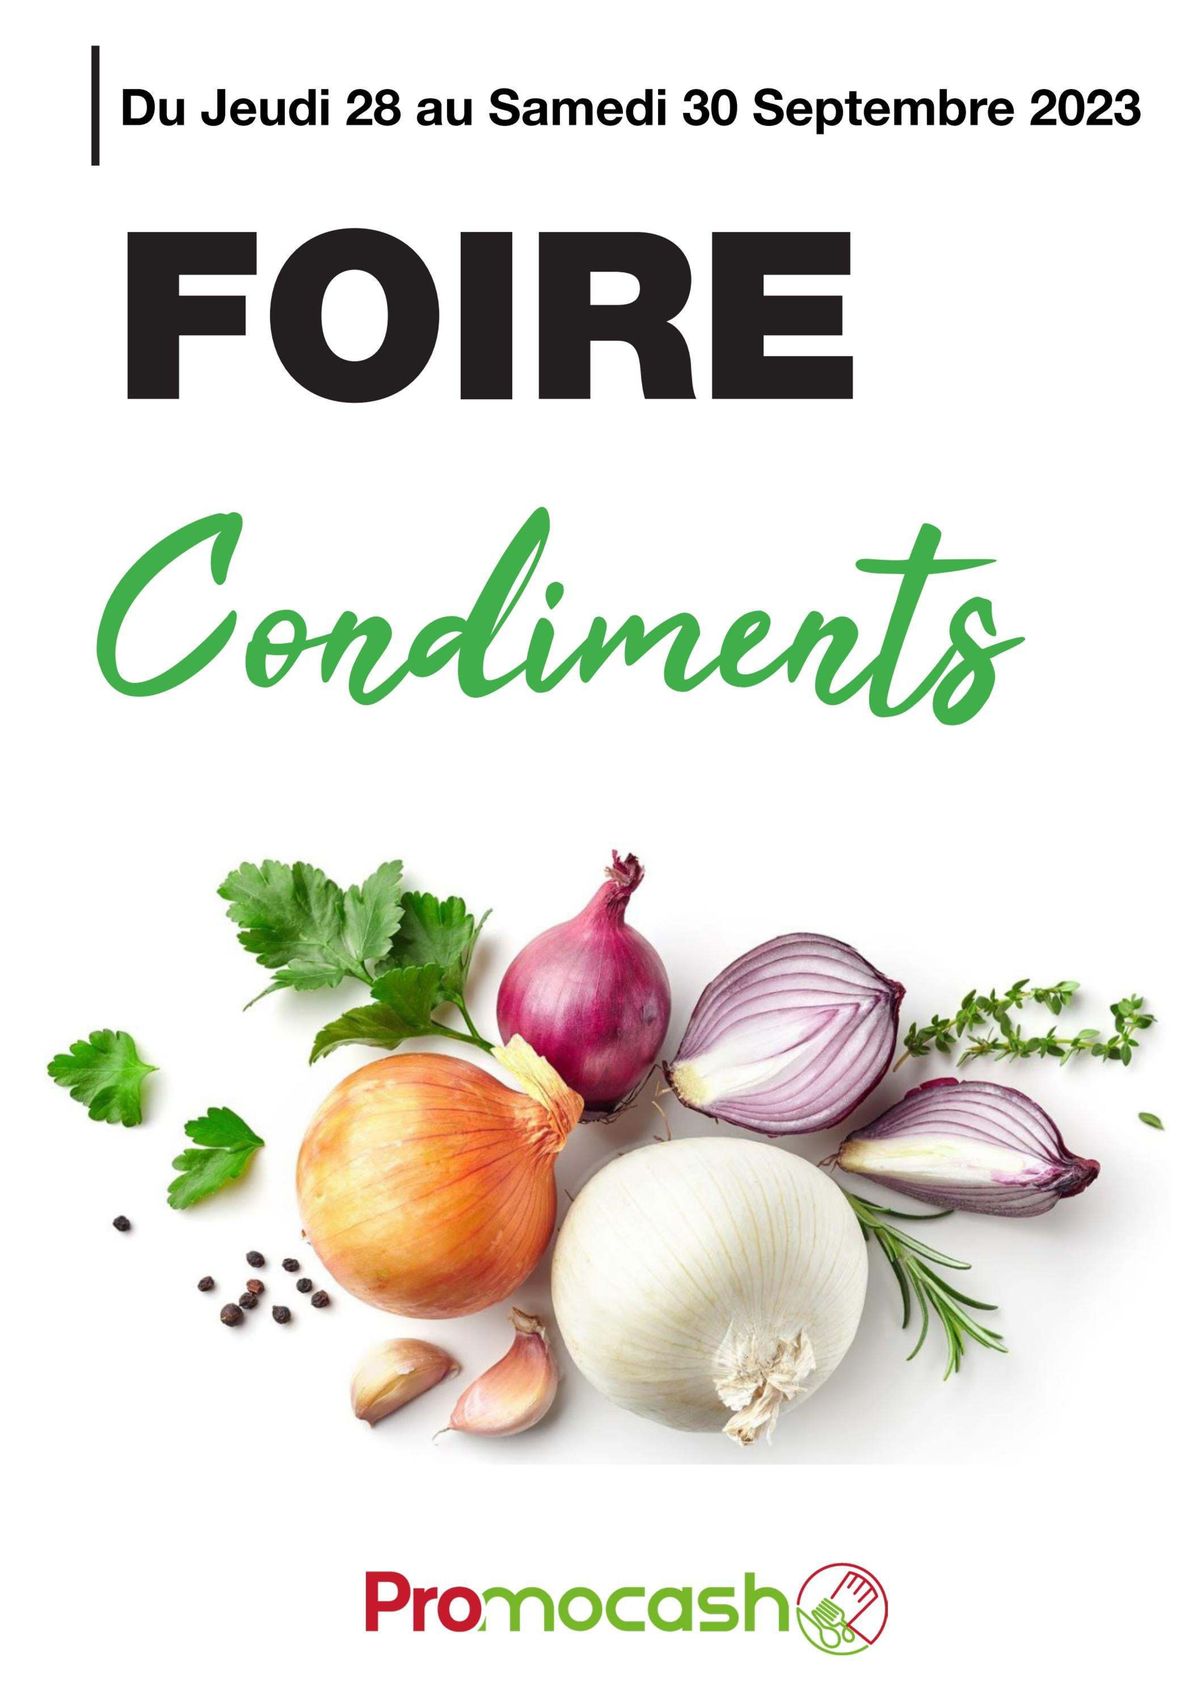 Catalogue Foire condiments, page 00001